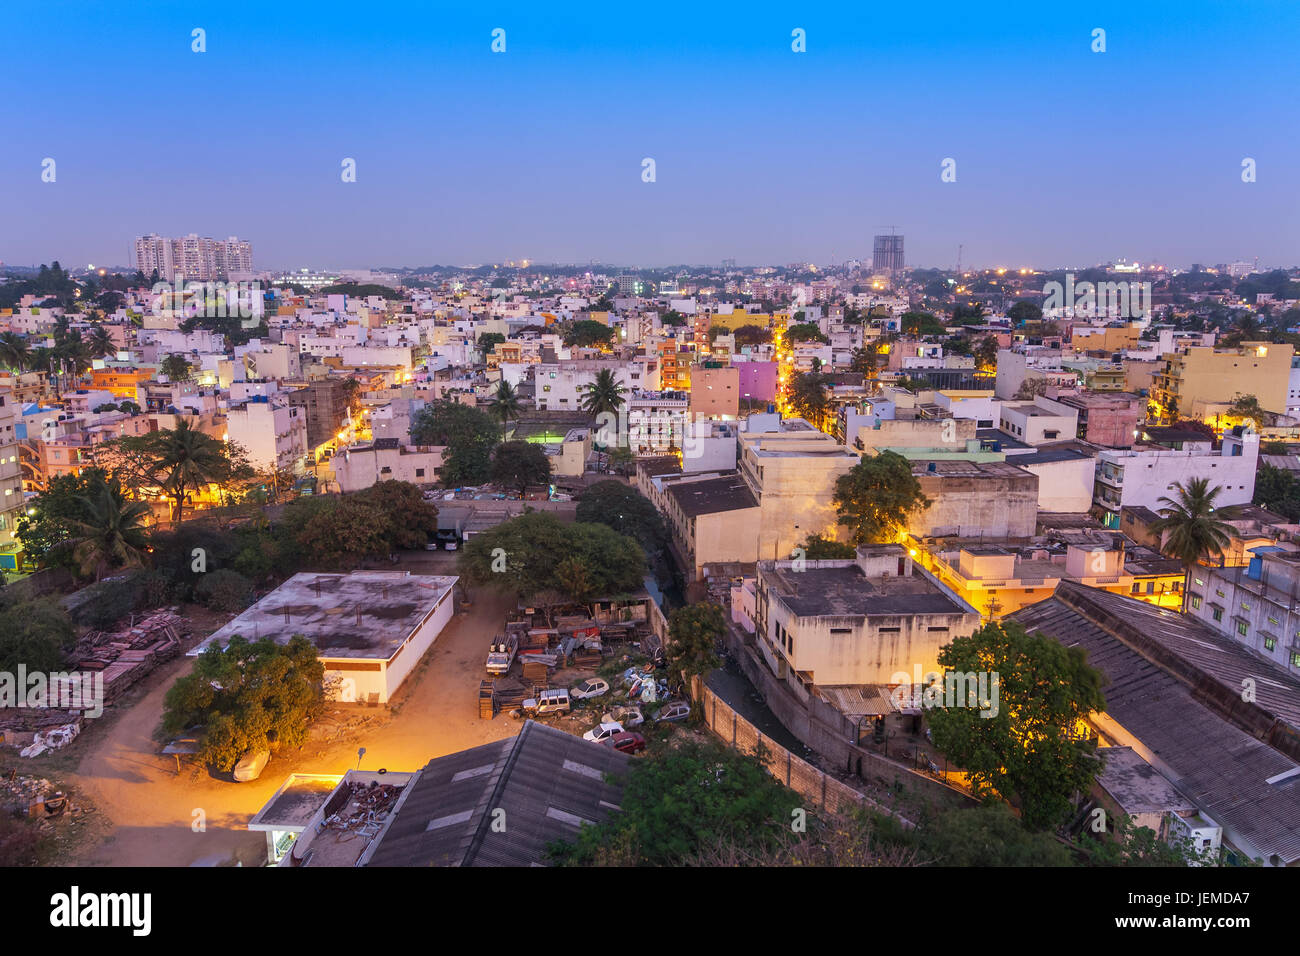 Bangalore city skyline in resident zone at night, Bangalore, India Stock Photo